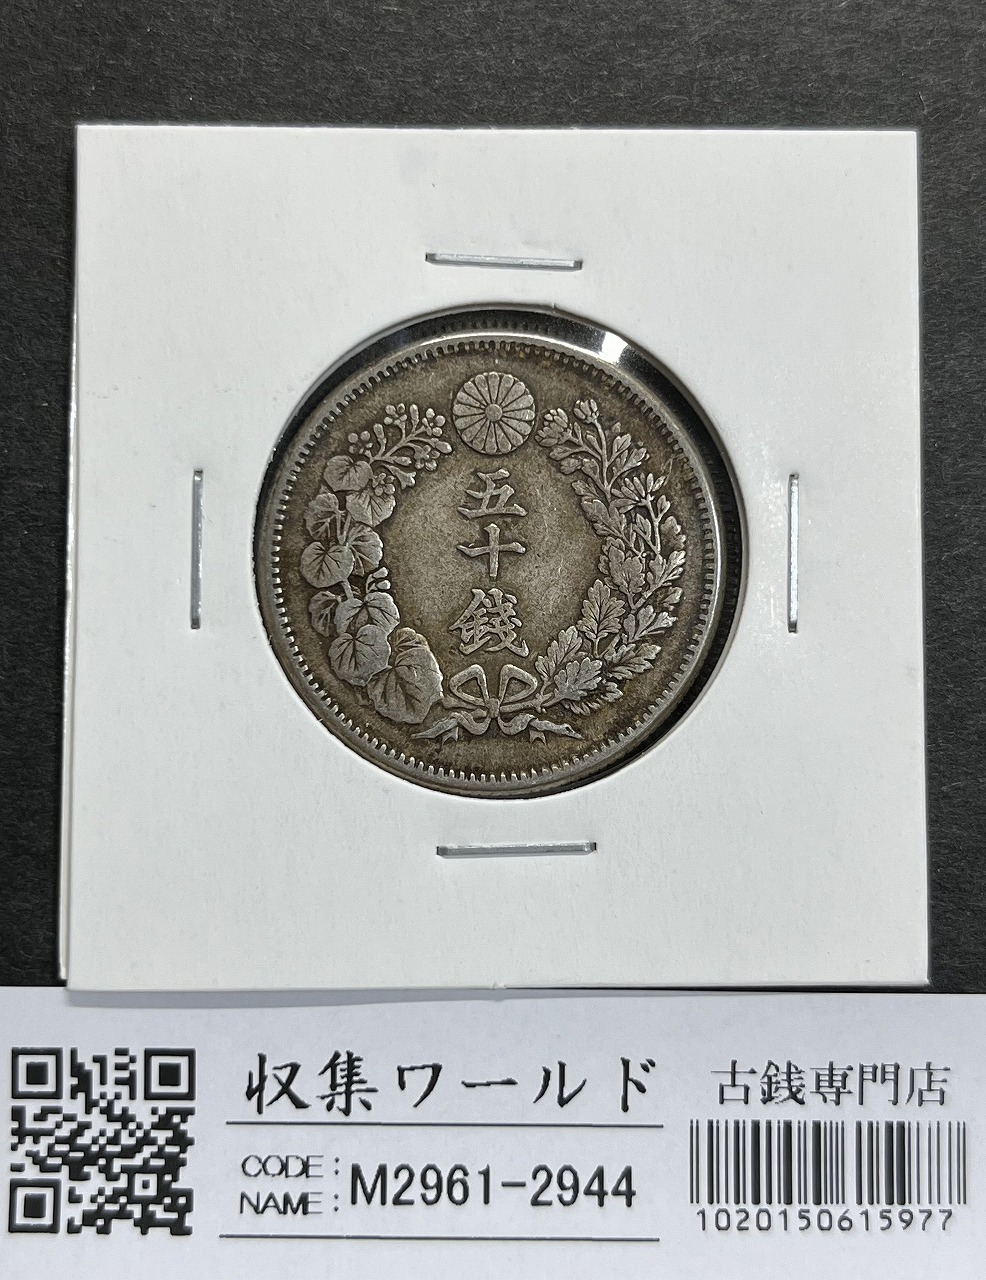 天皇陛下御在位十年記念 1万円金貨プルーフ貨幣セット 1999年 純金20g 